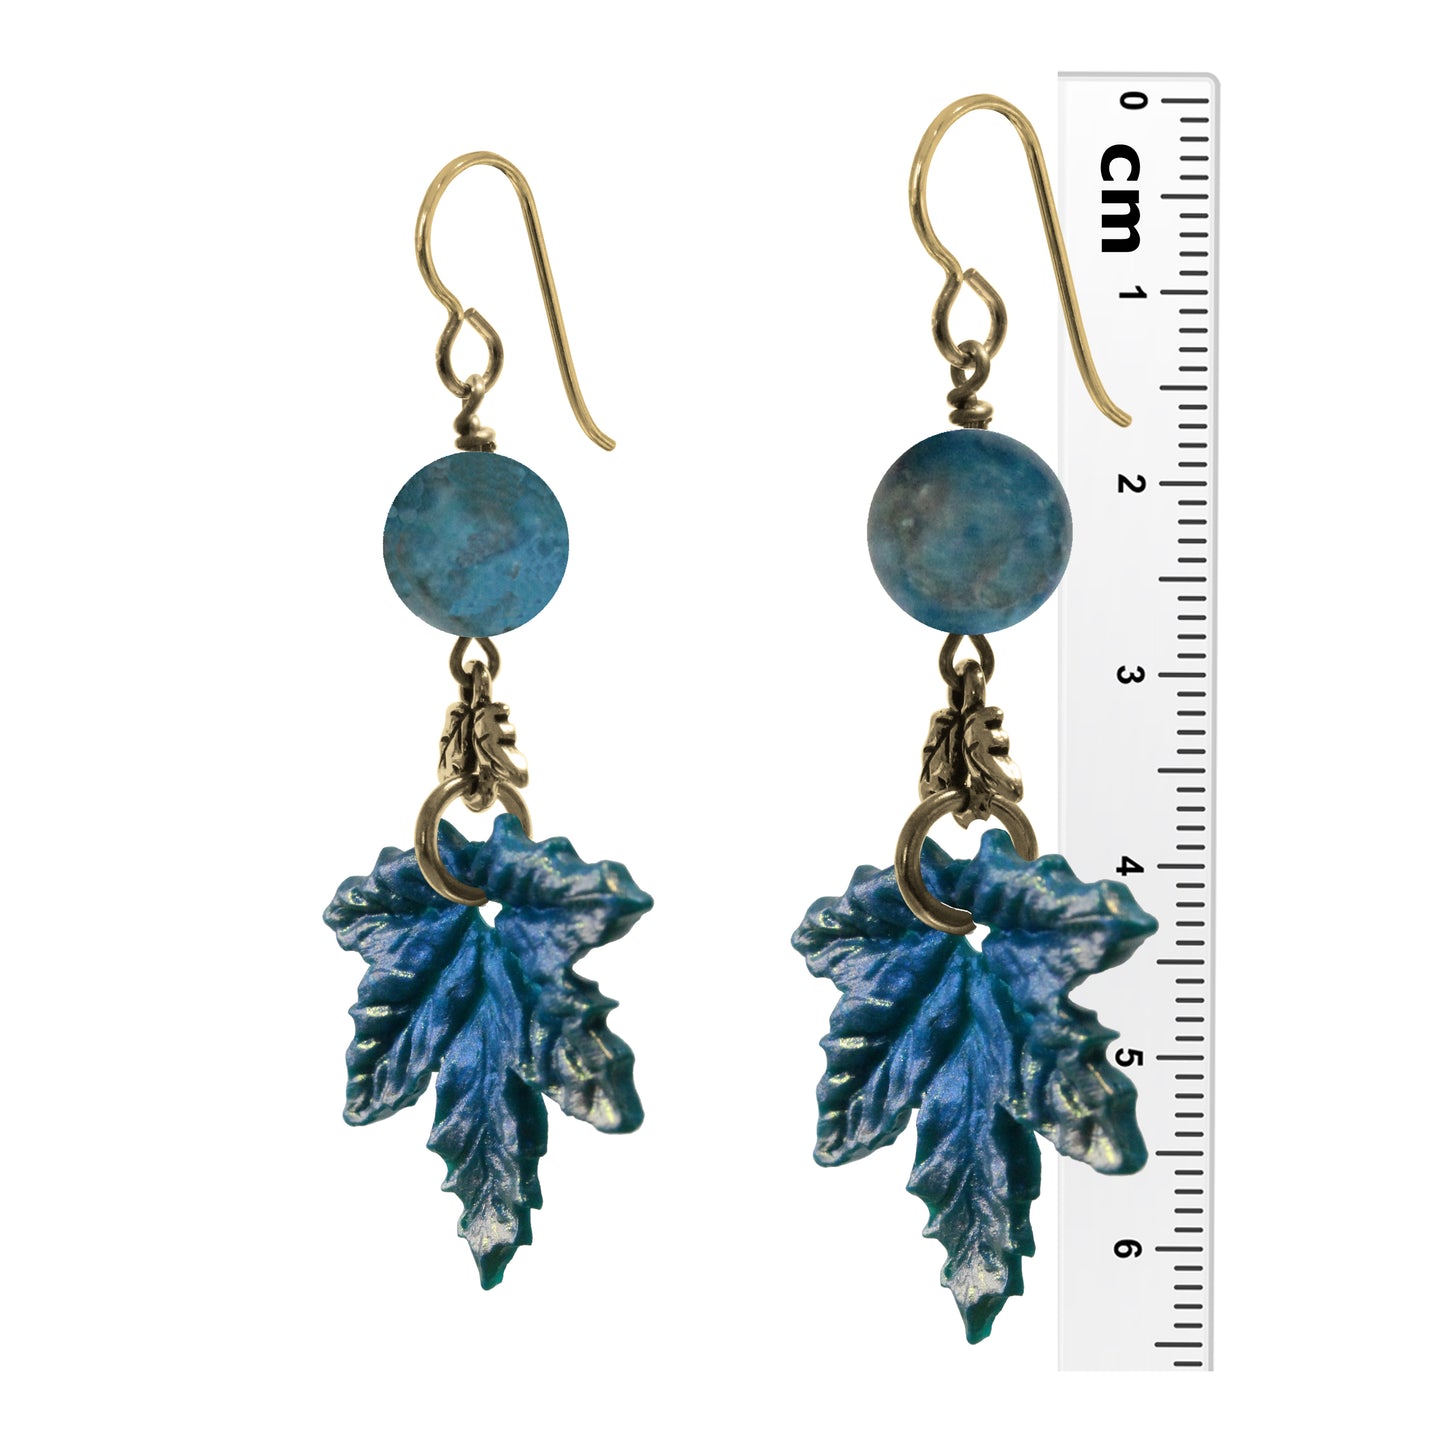 Winter Blue Maple Leaf Charm Earrings / gold filled hook earwires